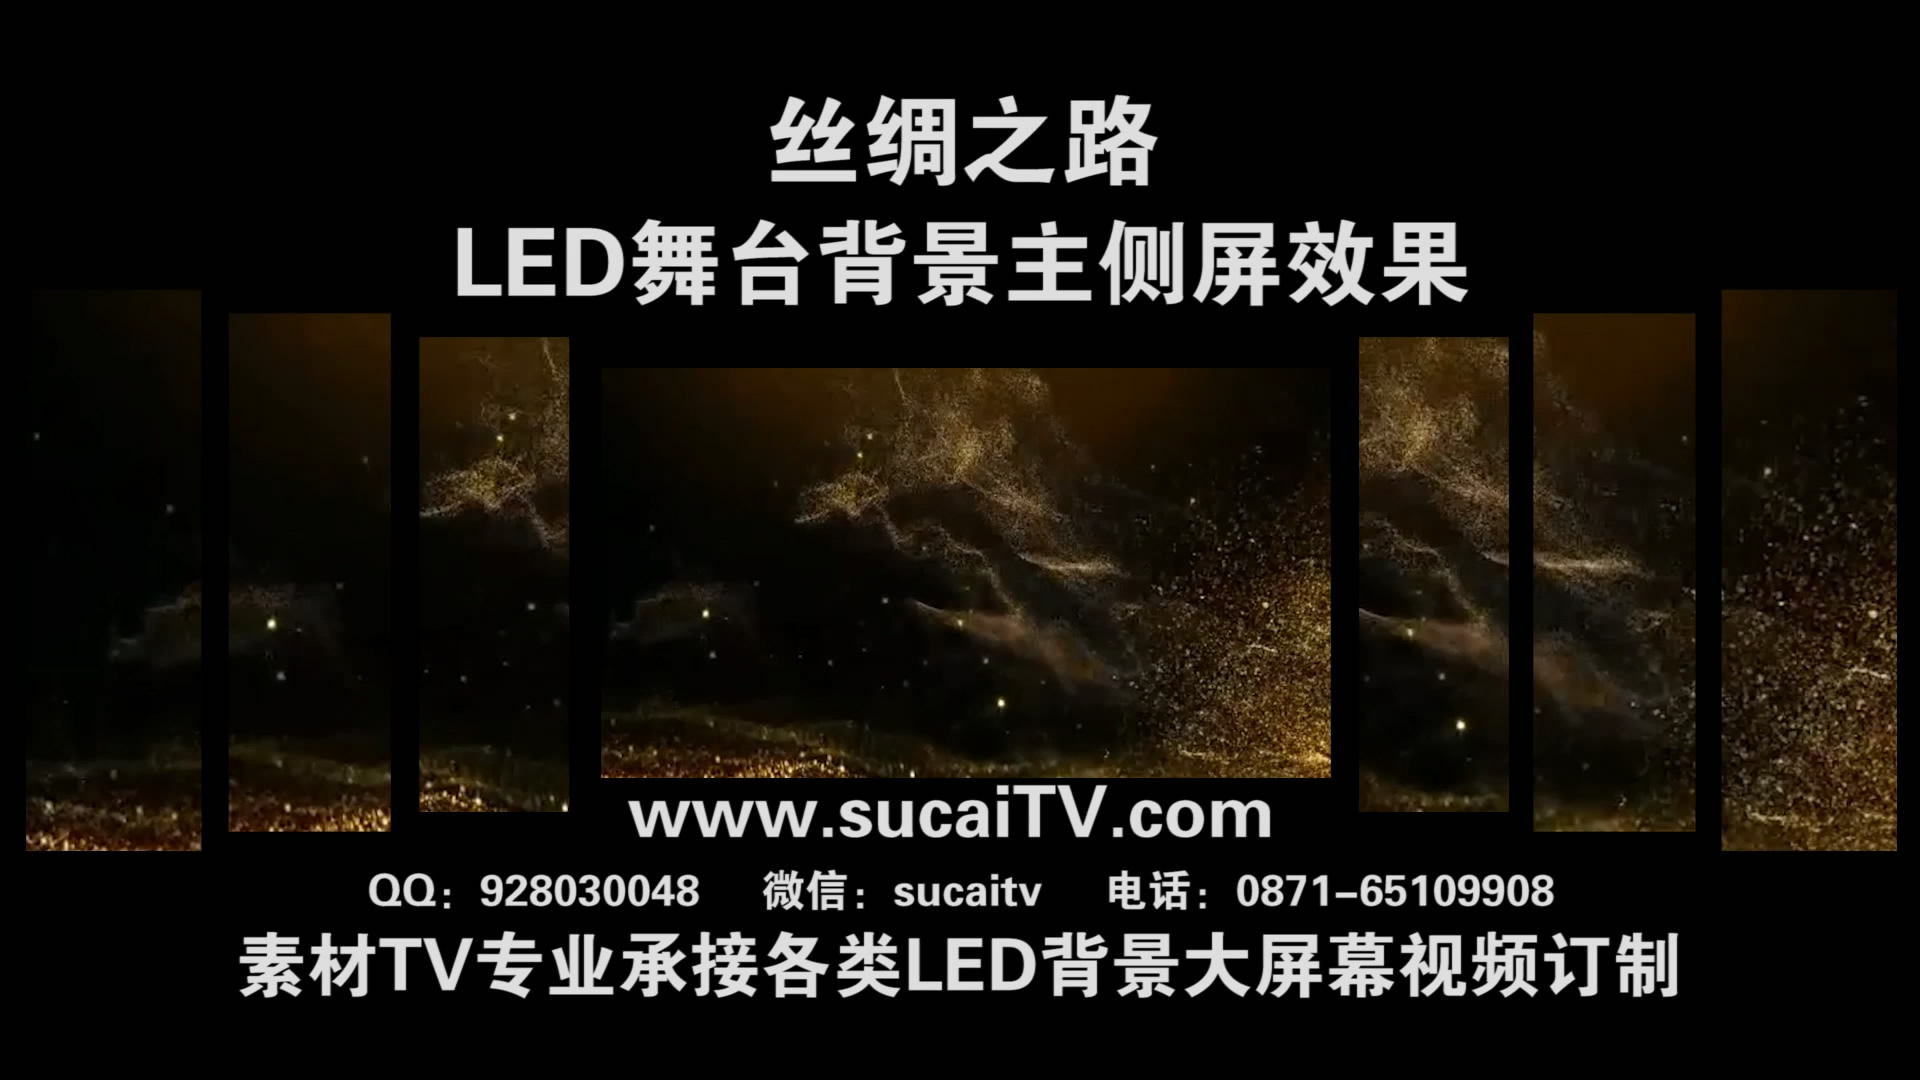 丝绸之路 敦煌系列舞蹈主侧屏成片舞台演出LED背景大屏幕视频素材TV